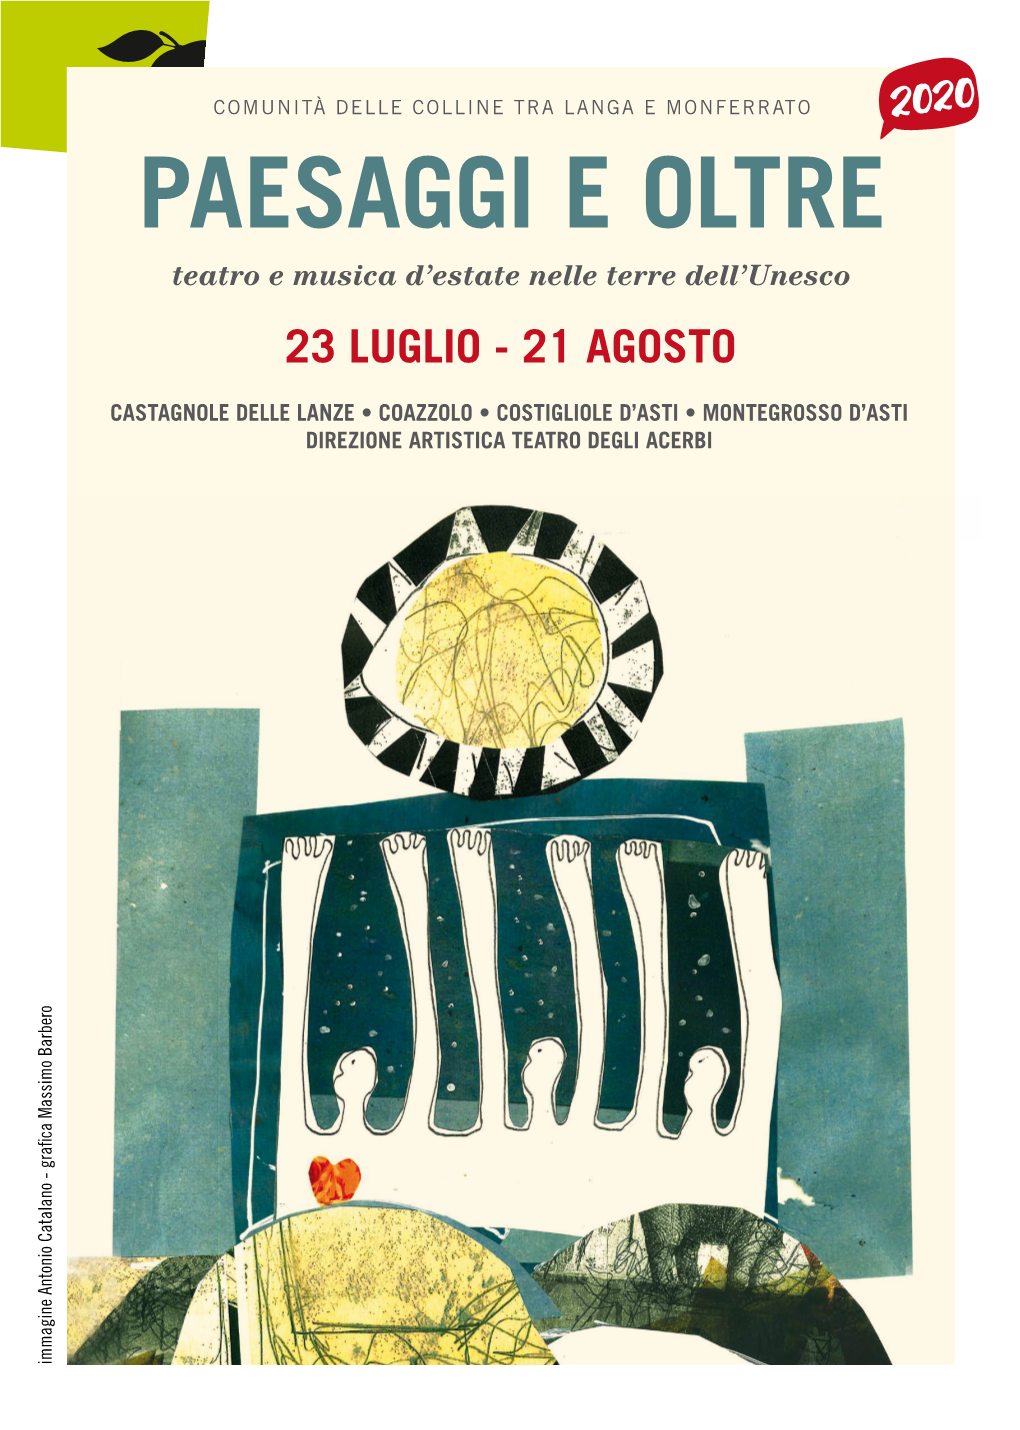 PAESAGGI E OLTRE Teatro E Musica D’Estate Nelle Terre Dell’Unesco 23 LUGLIO - 21 AGOSTO